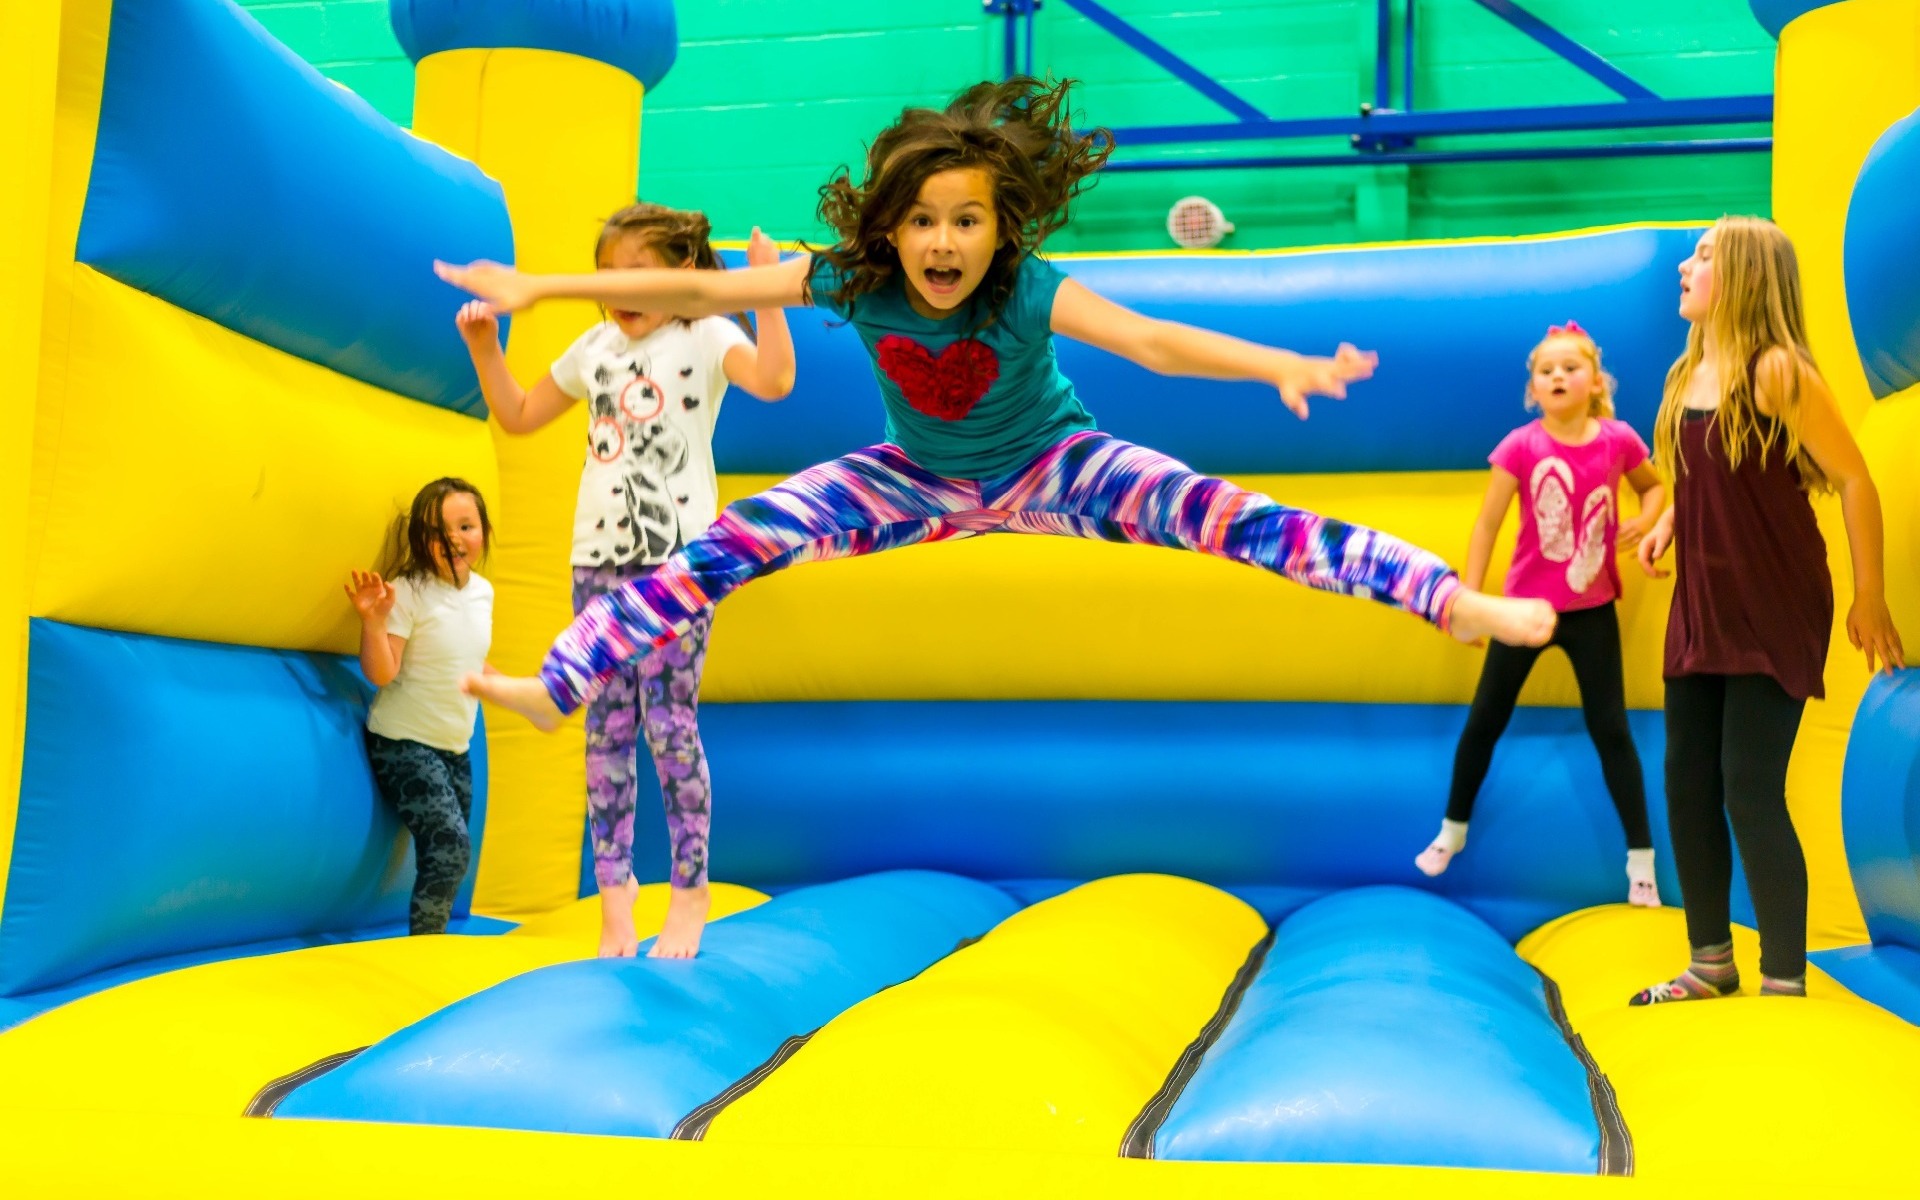 Girls on bouncy castle